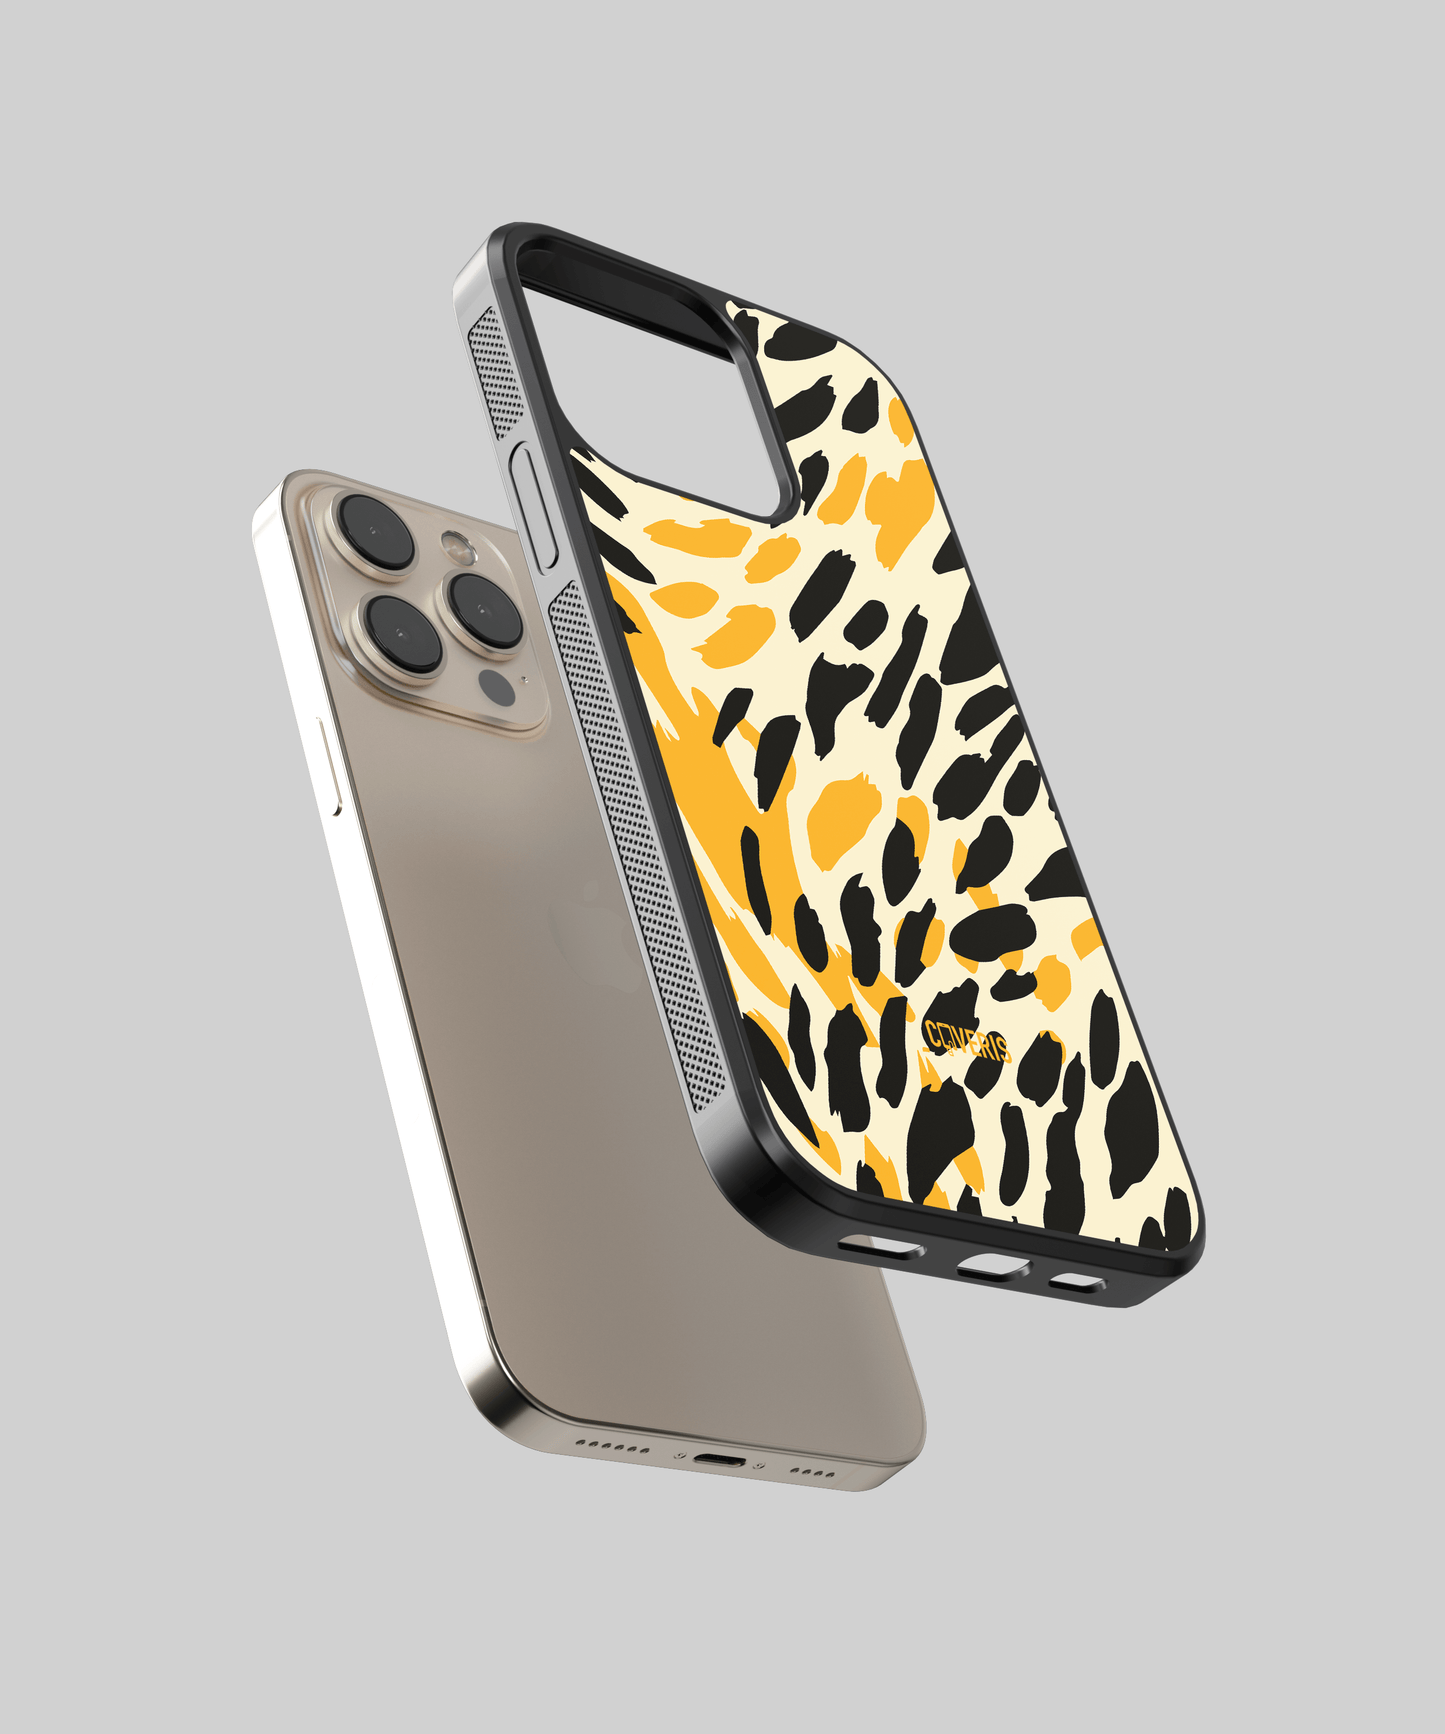 Cheetah - Samsung Galaxy A81 phone case